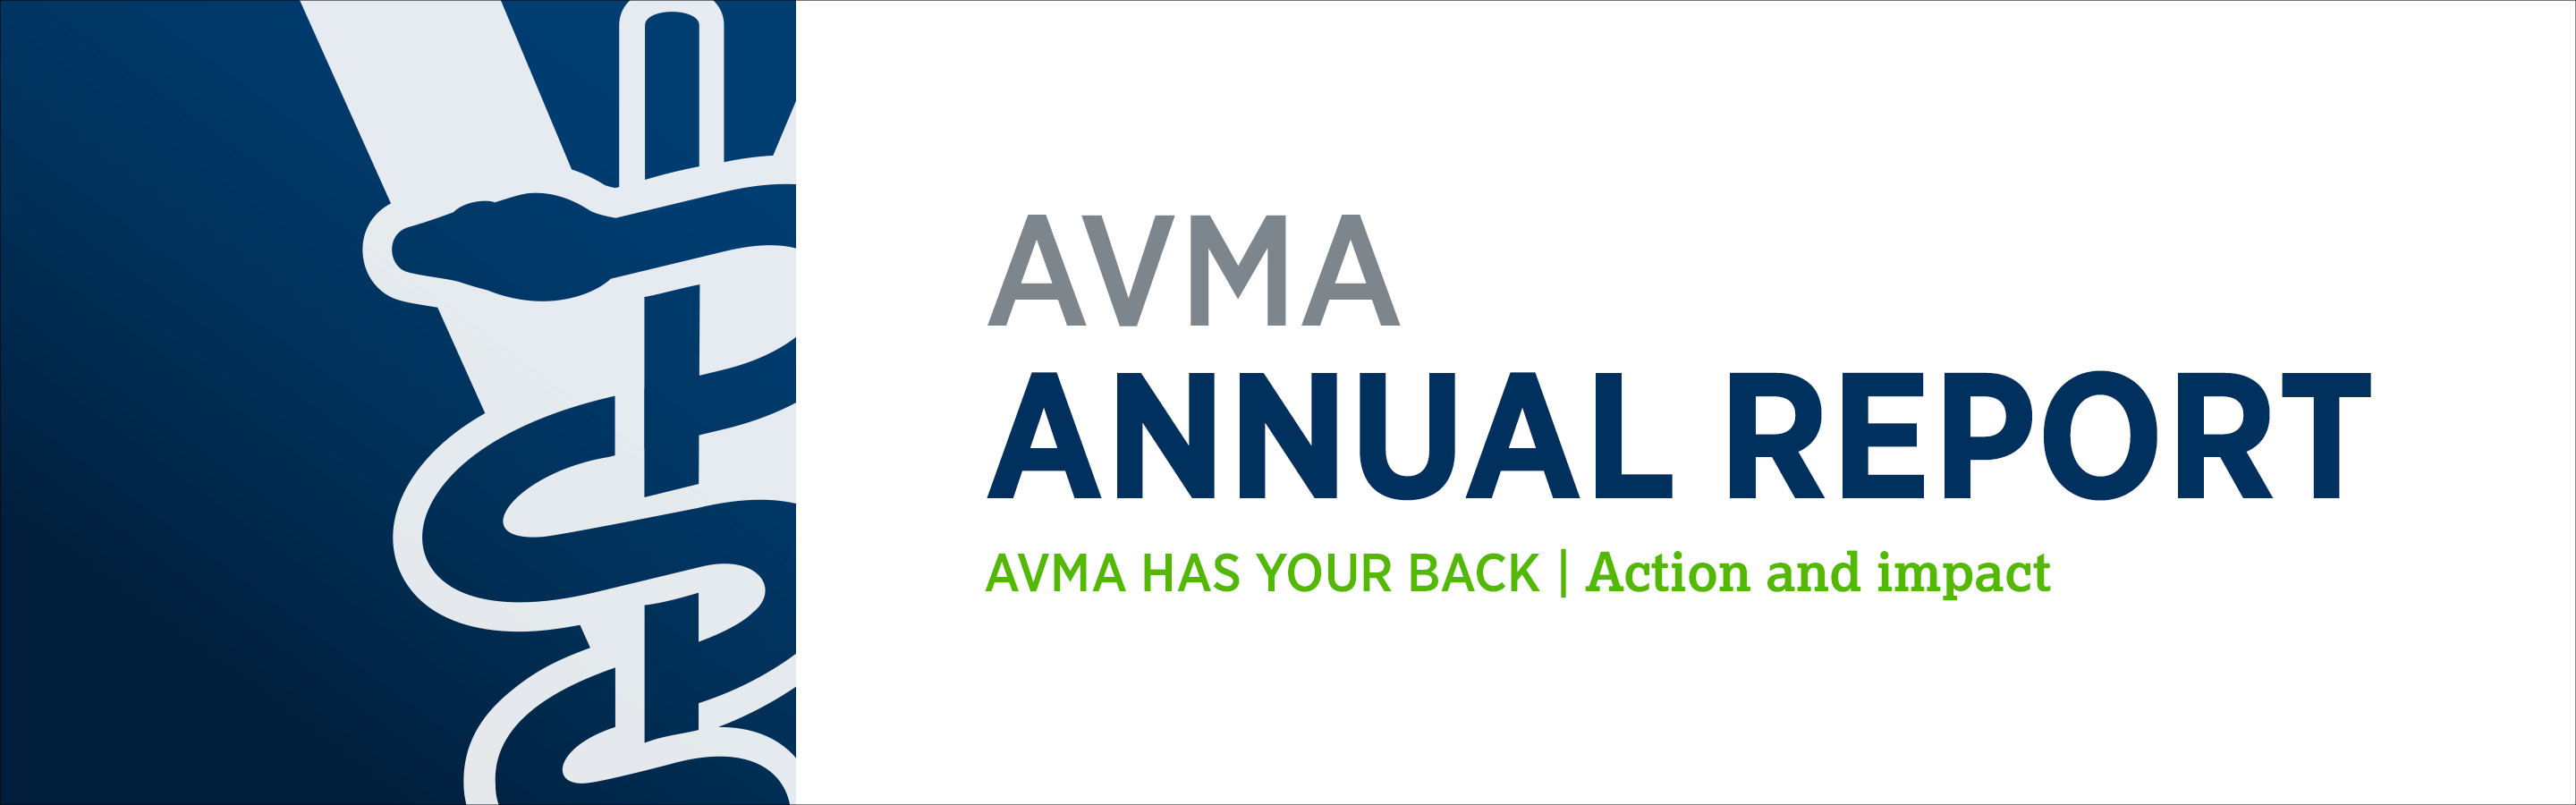 AVMA annual report